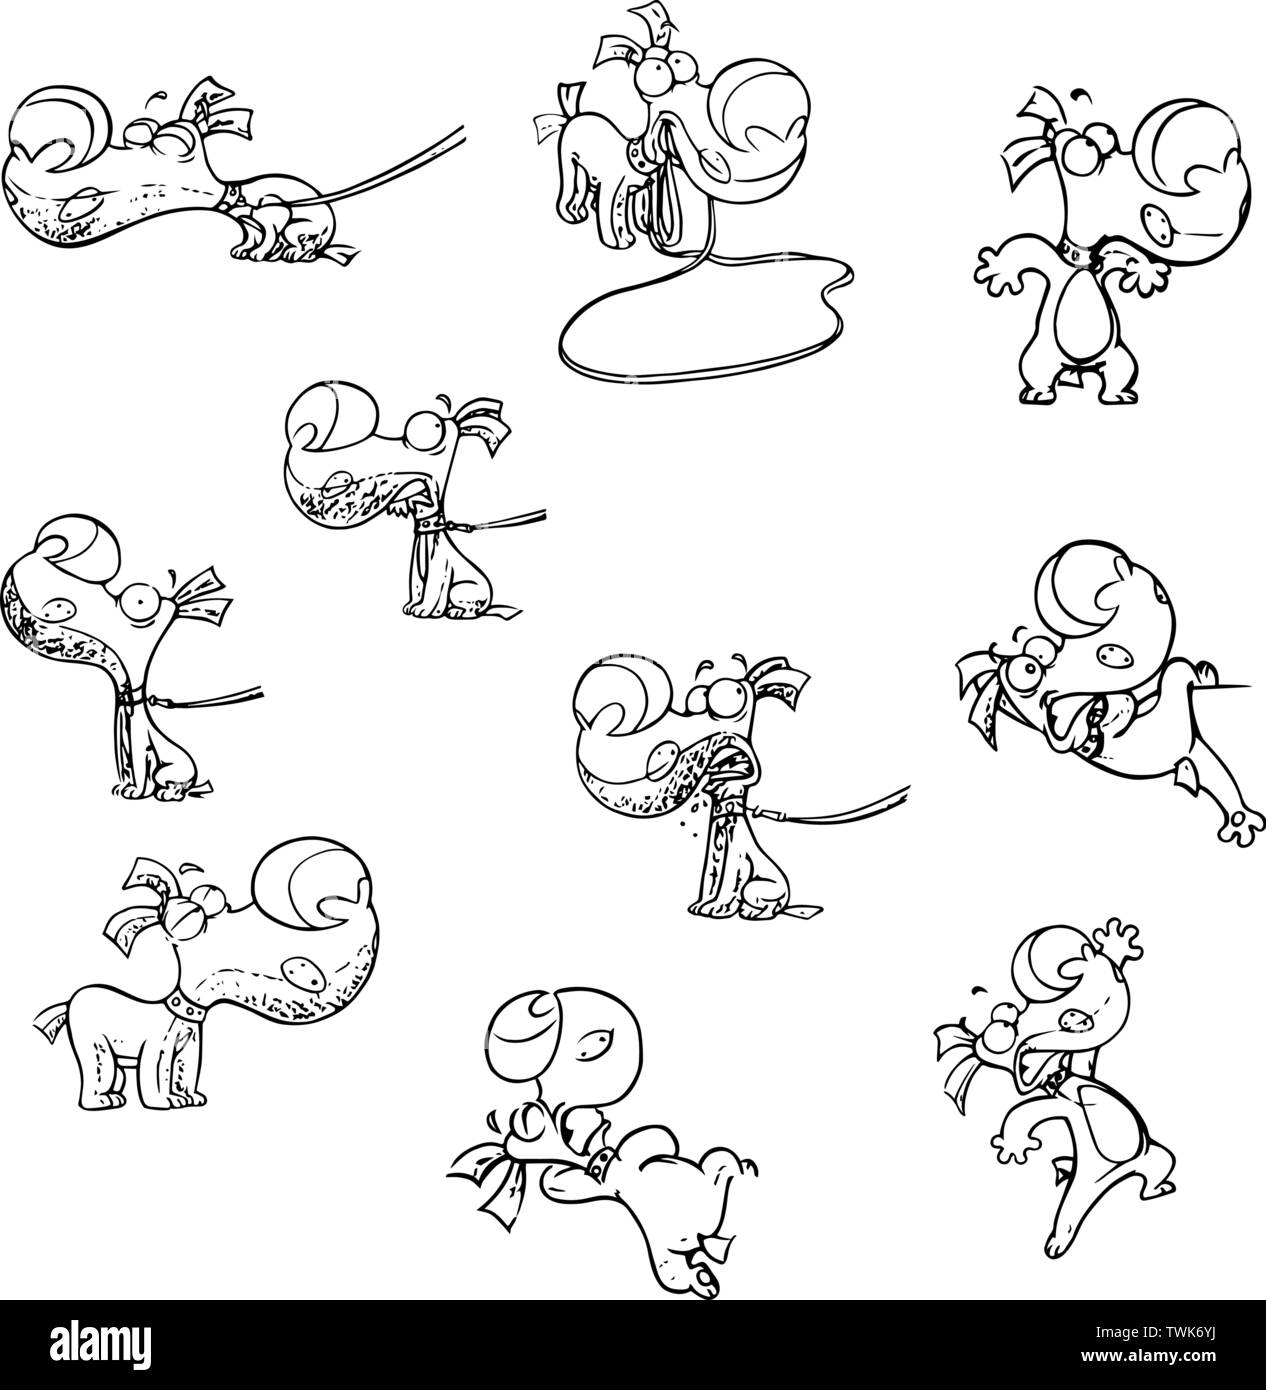 Satz von Vektorgrafiken mit einem lustigen Cartoon Welpe mit verschiedenen Emotionen und in verschiedenen Posen. Die Abbildung des Hundes ist in einem schwarzen ou gemacht Stock Vektor